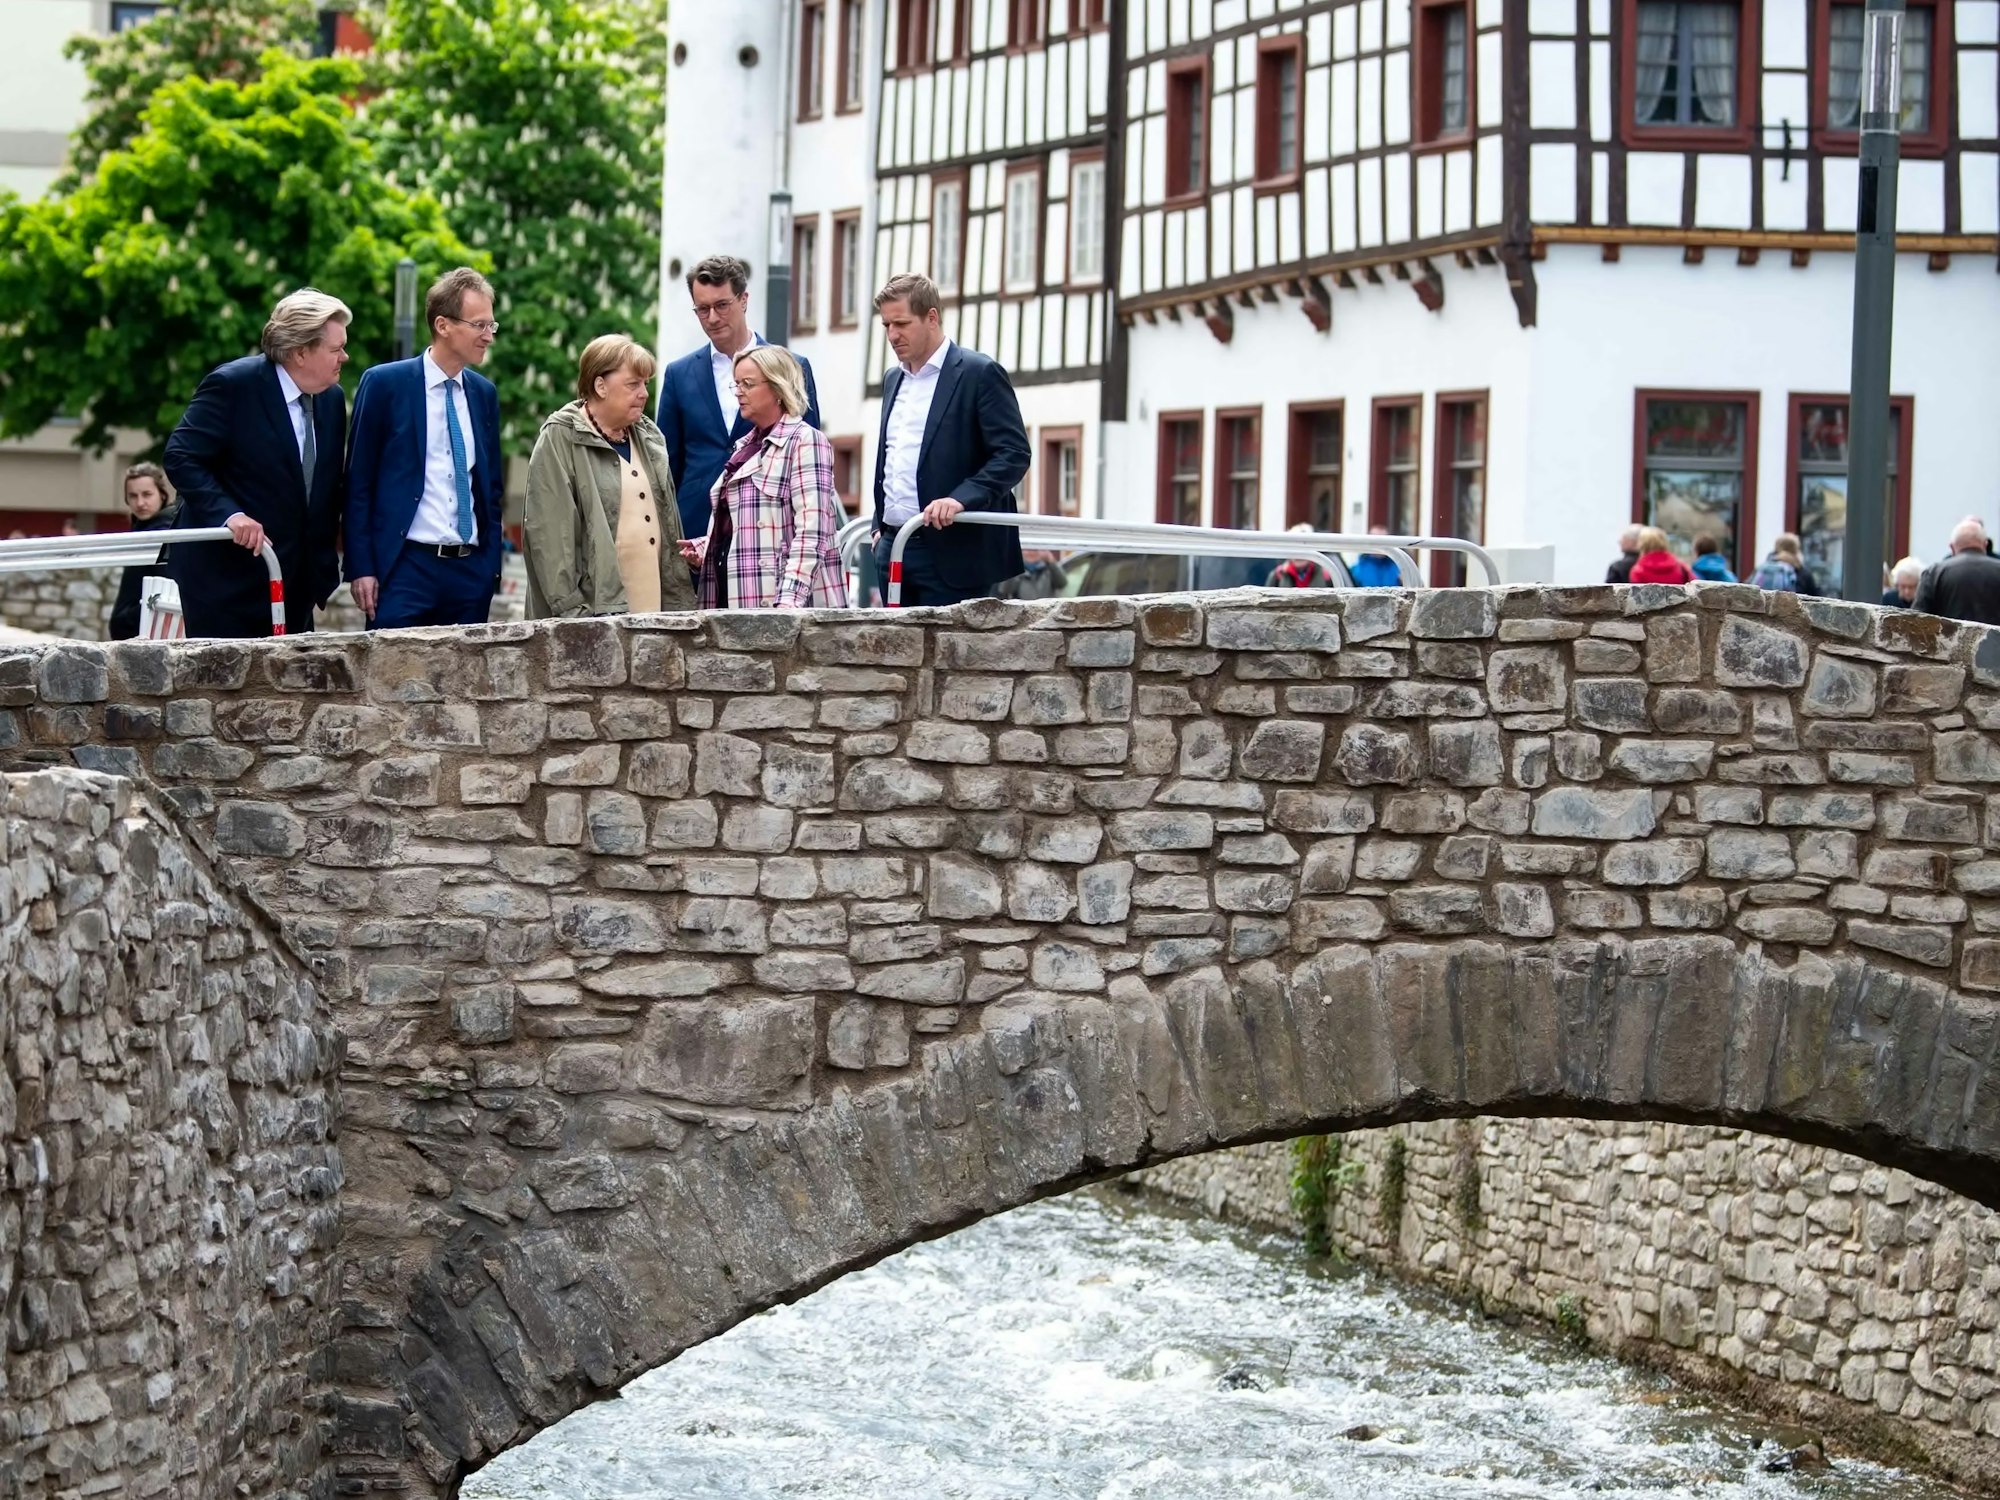 Viele der Brücke, die vom Hochwasser beschädigt oder zerstört worden waren, sind wieder aufgebaut. Ex-Bundeskanzlerin Angela Merkel und NRW-Ministerpräsident machten sich ein Bild vom Wiederaufbau.